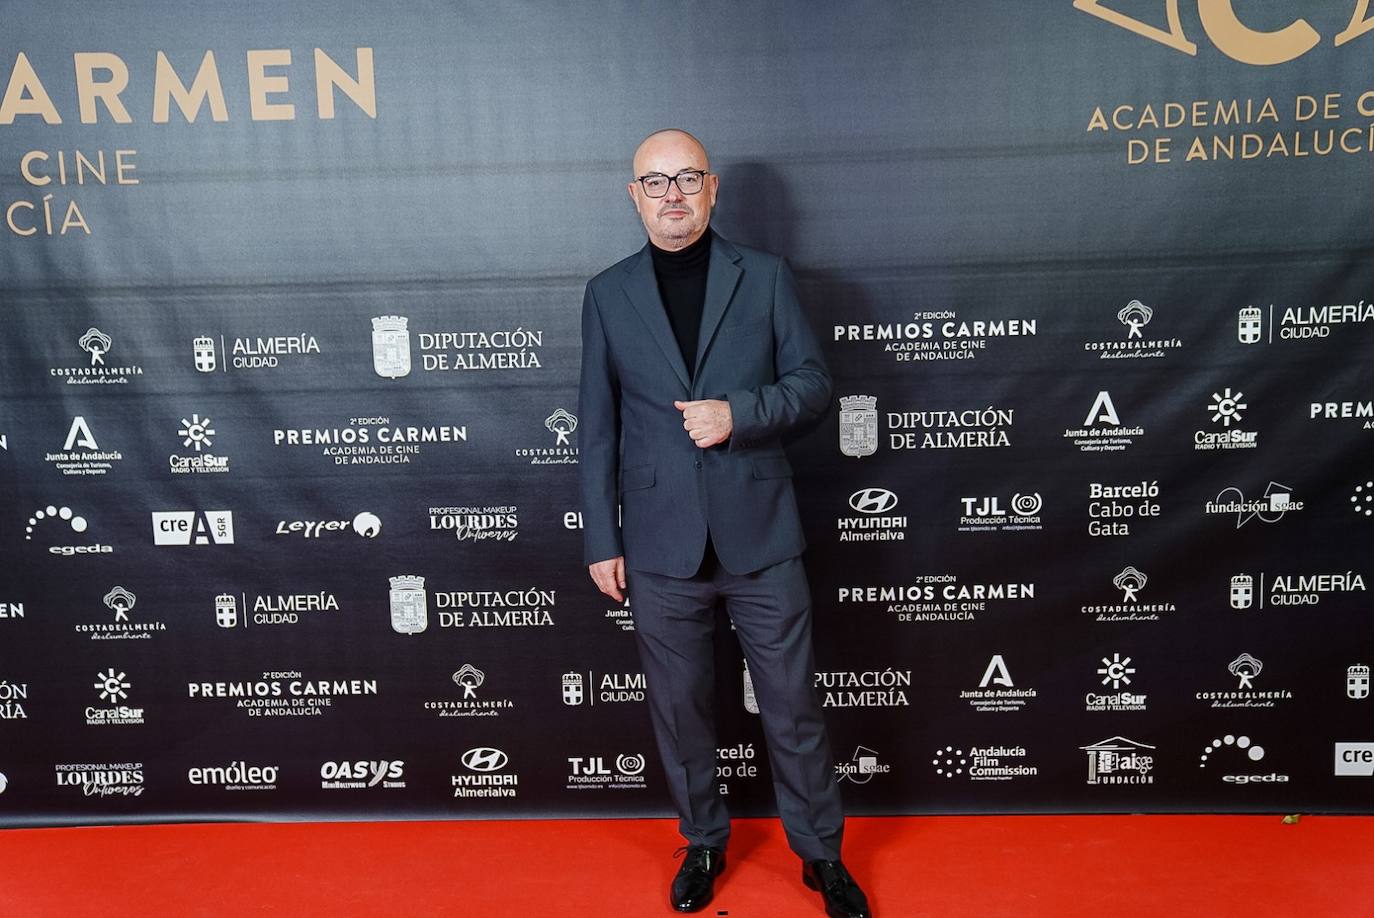 Fotos: Así fue la alfombra roja de los Premios Carmen en Almería